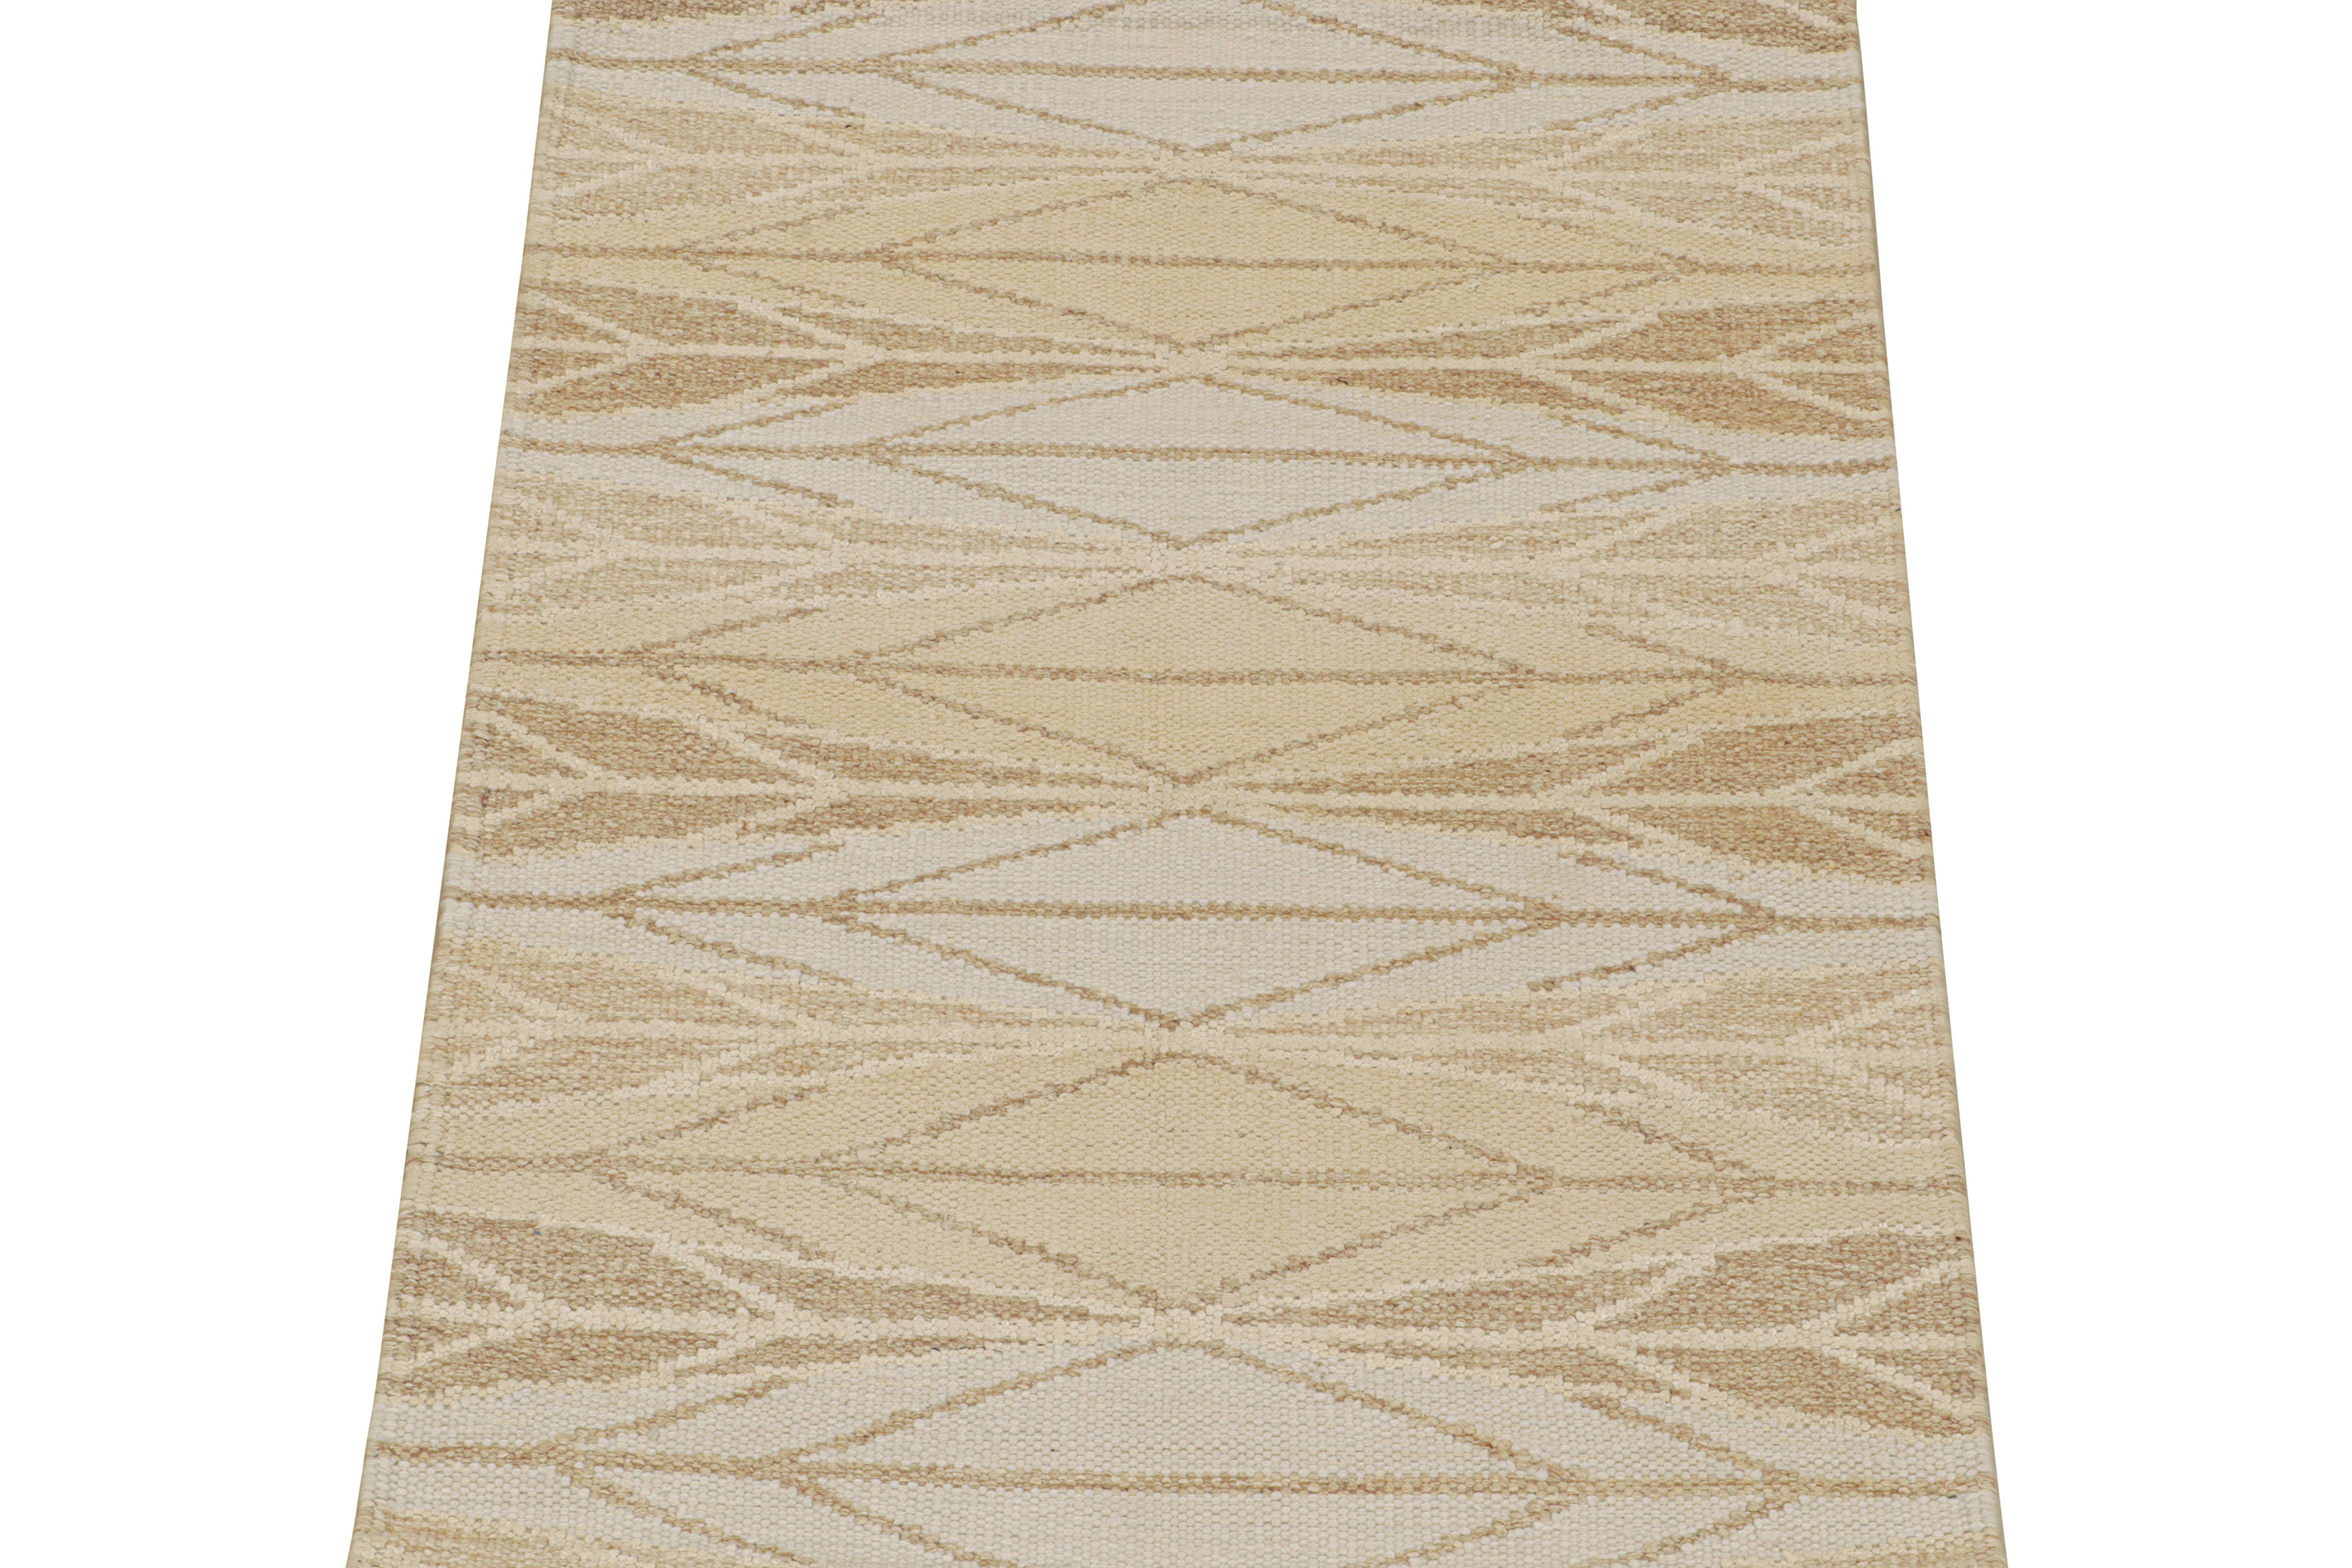 Ce tapis 3x5 à tissage plat est un nouvel ajout audacieux à la collection Scandinavian de Rug & Kilim. Tissé à la main en laine et en fils naturels, son design reflète une version contemporaine des styles Rollakans et Déco suédois du milieu du